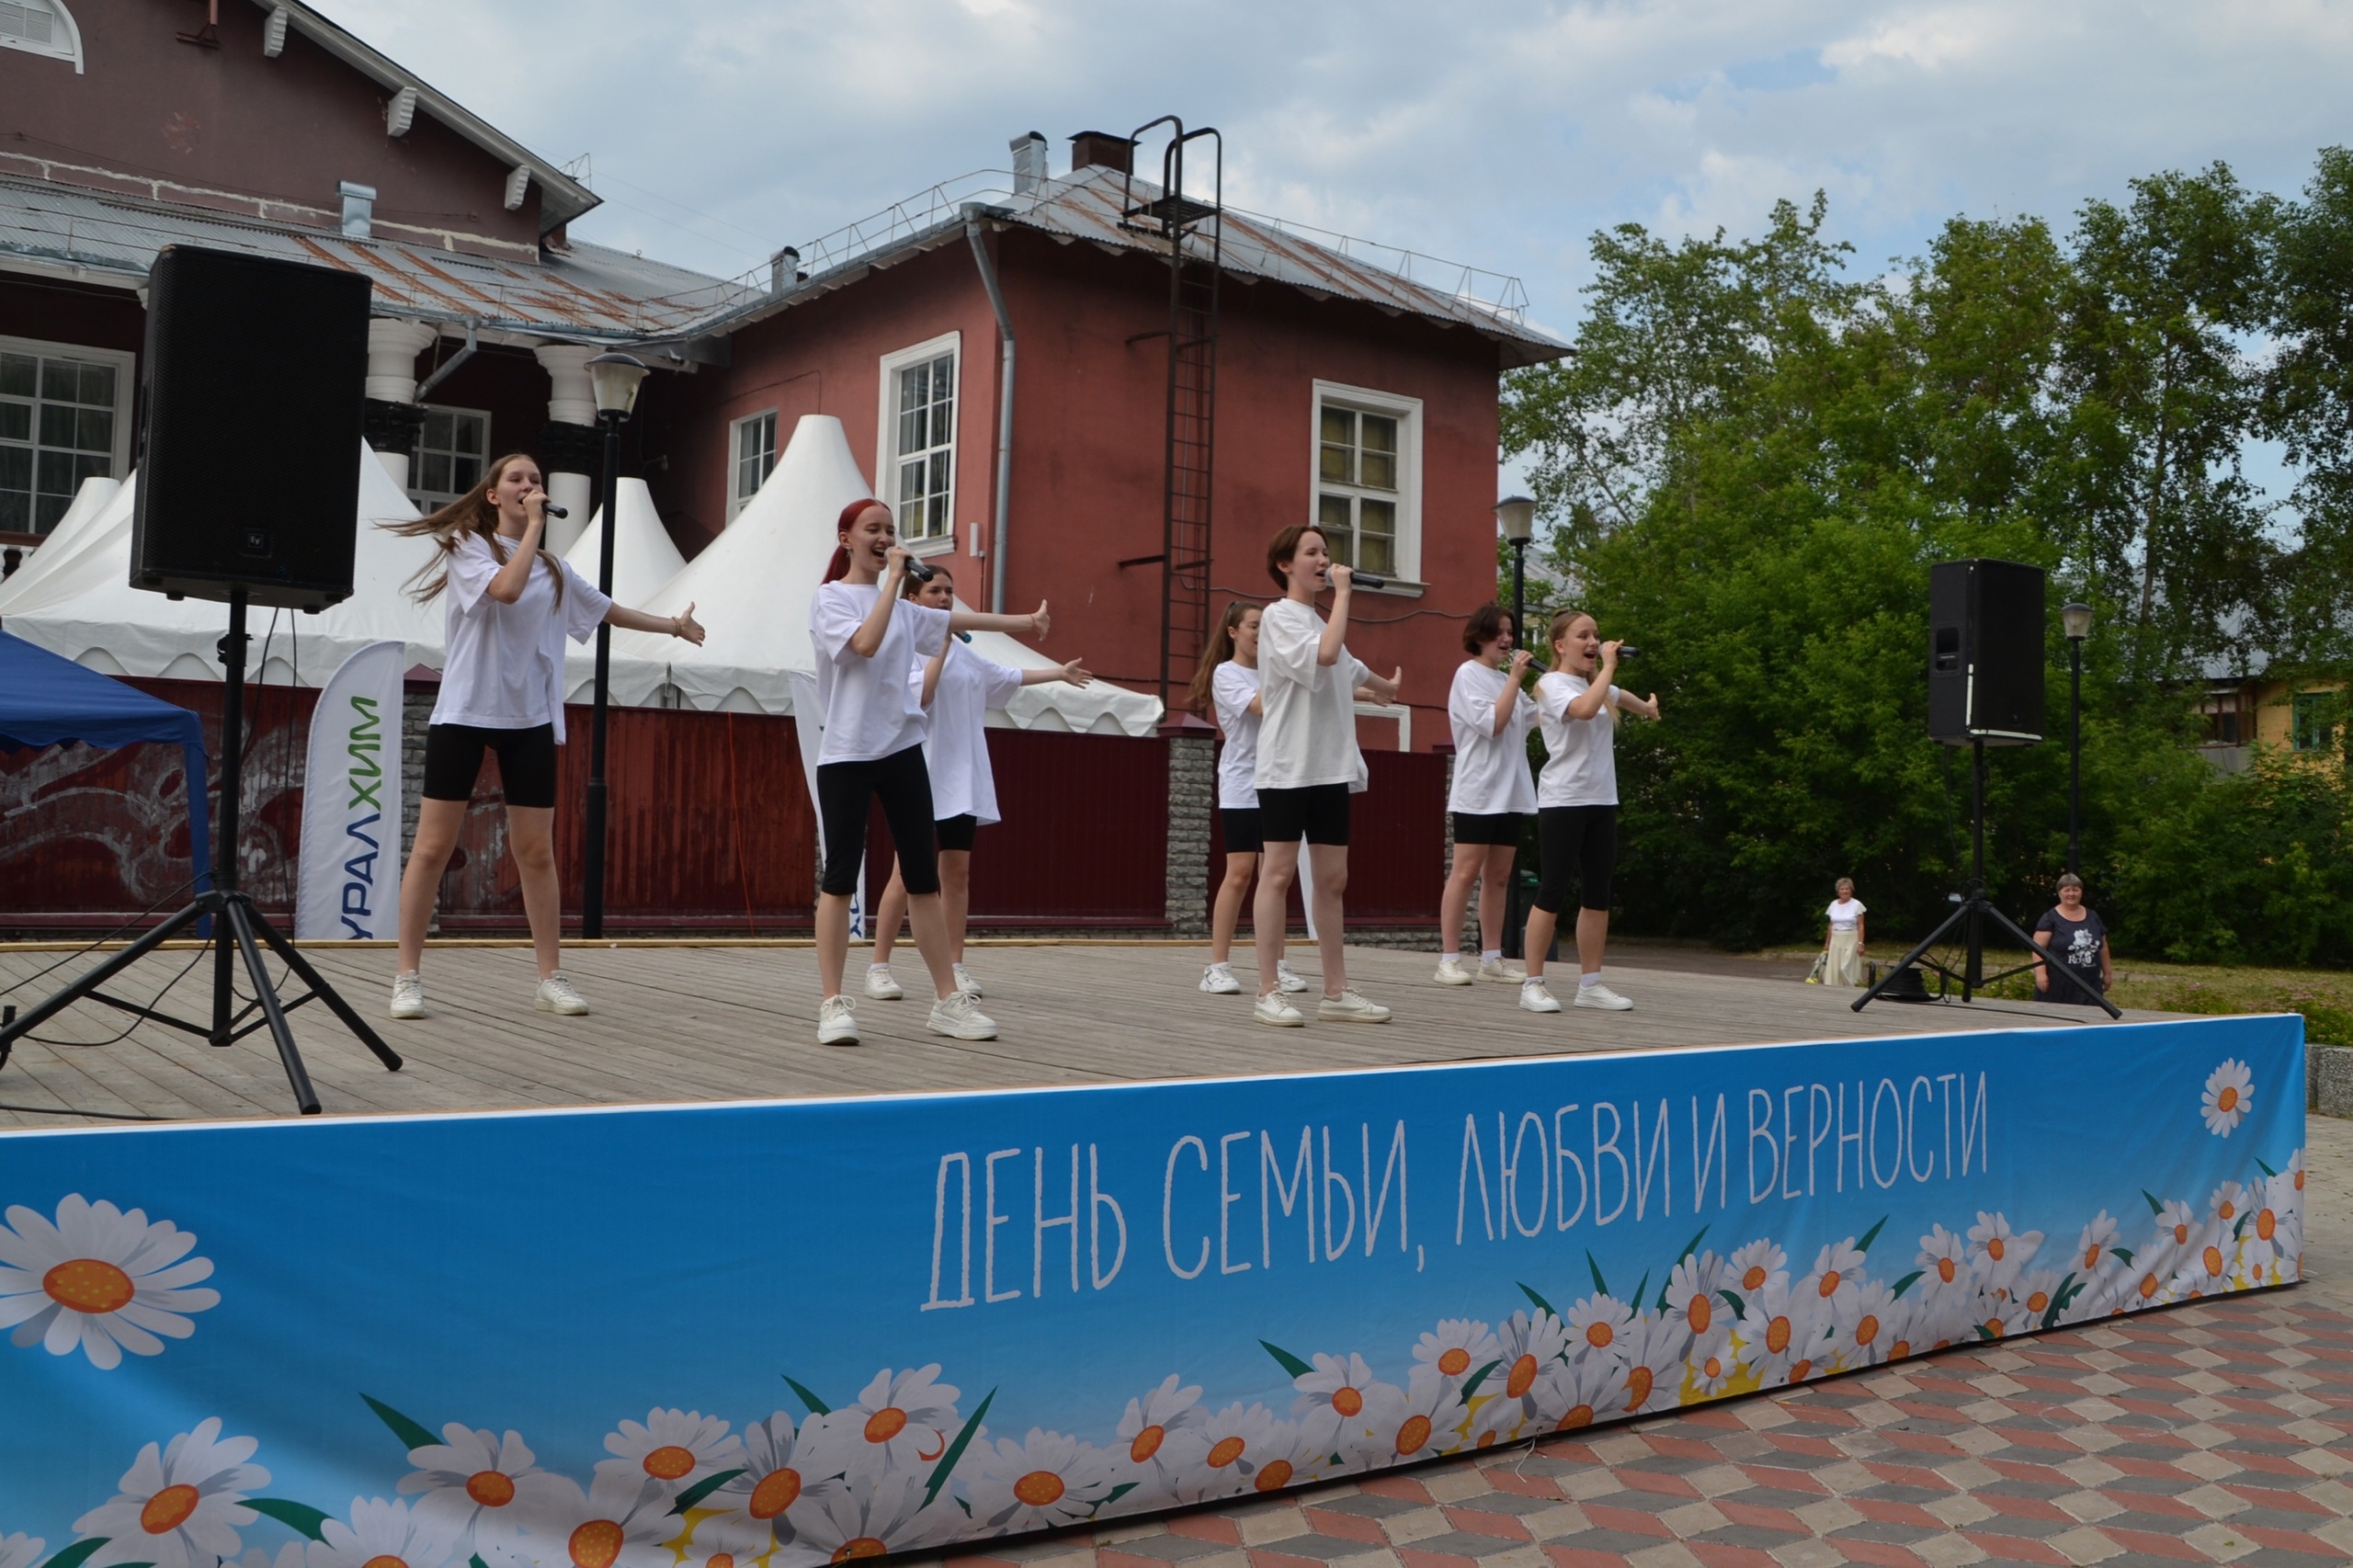 Кирово-Чепецк масштабно празднует День семьи, любви и верности